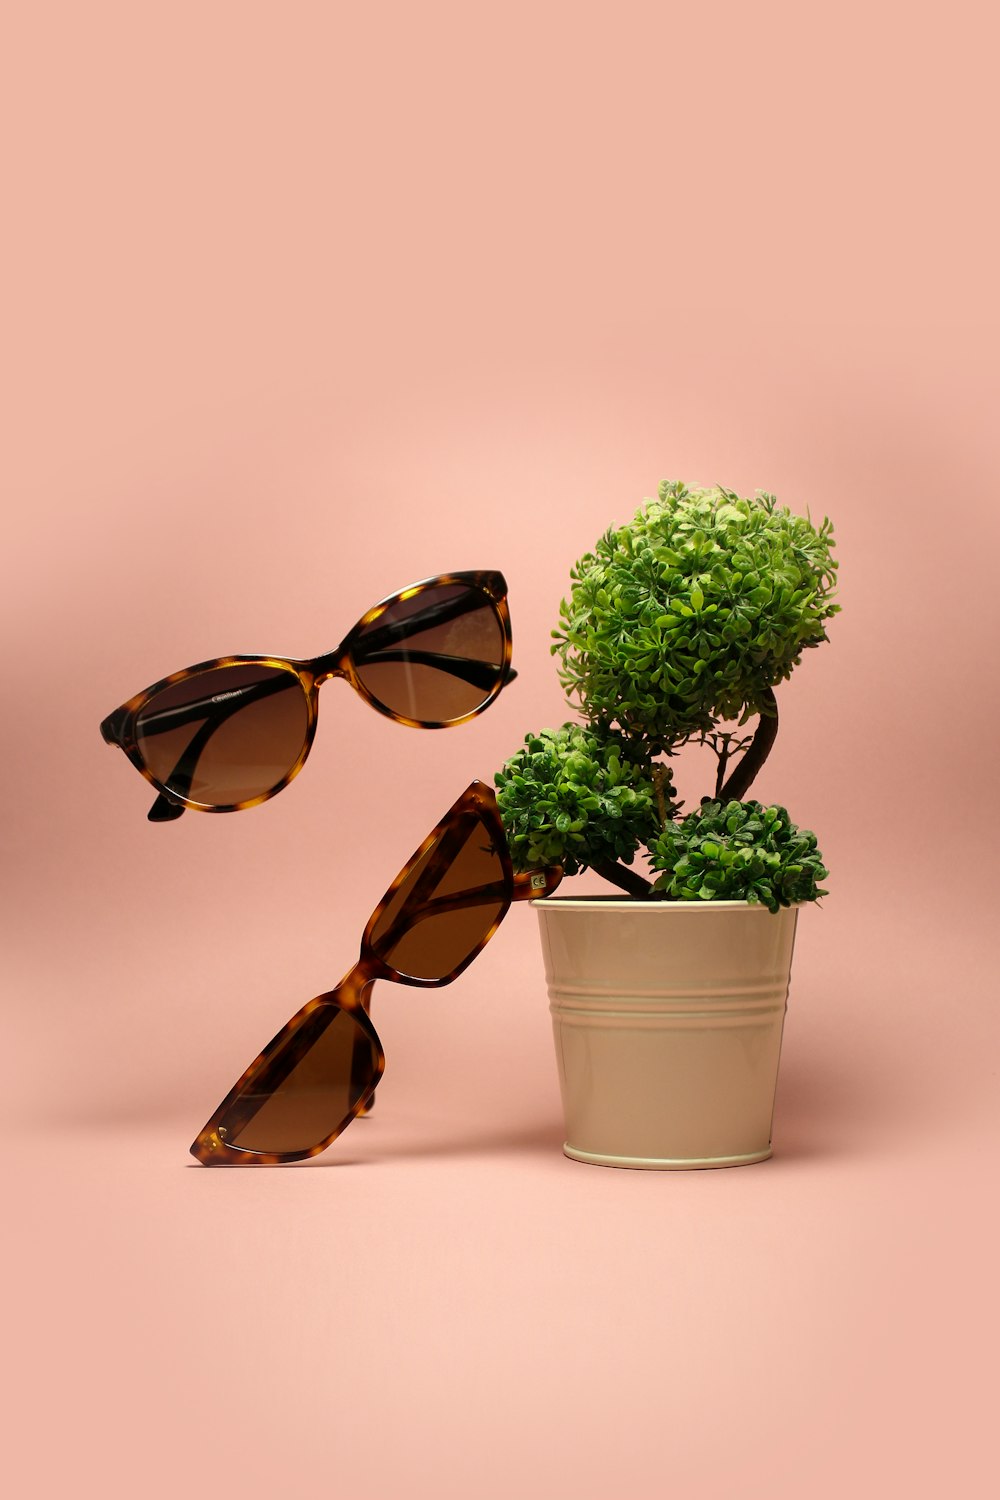 zwei braune Sonnenbrillen neben grünblättriger Pflanze